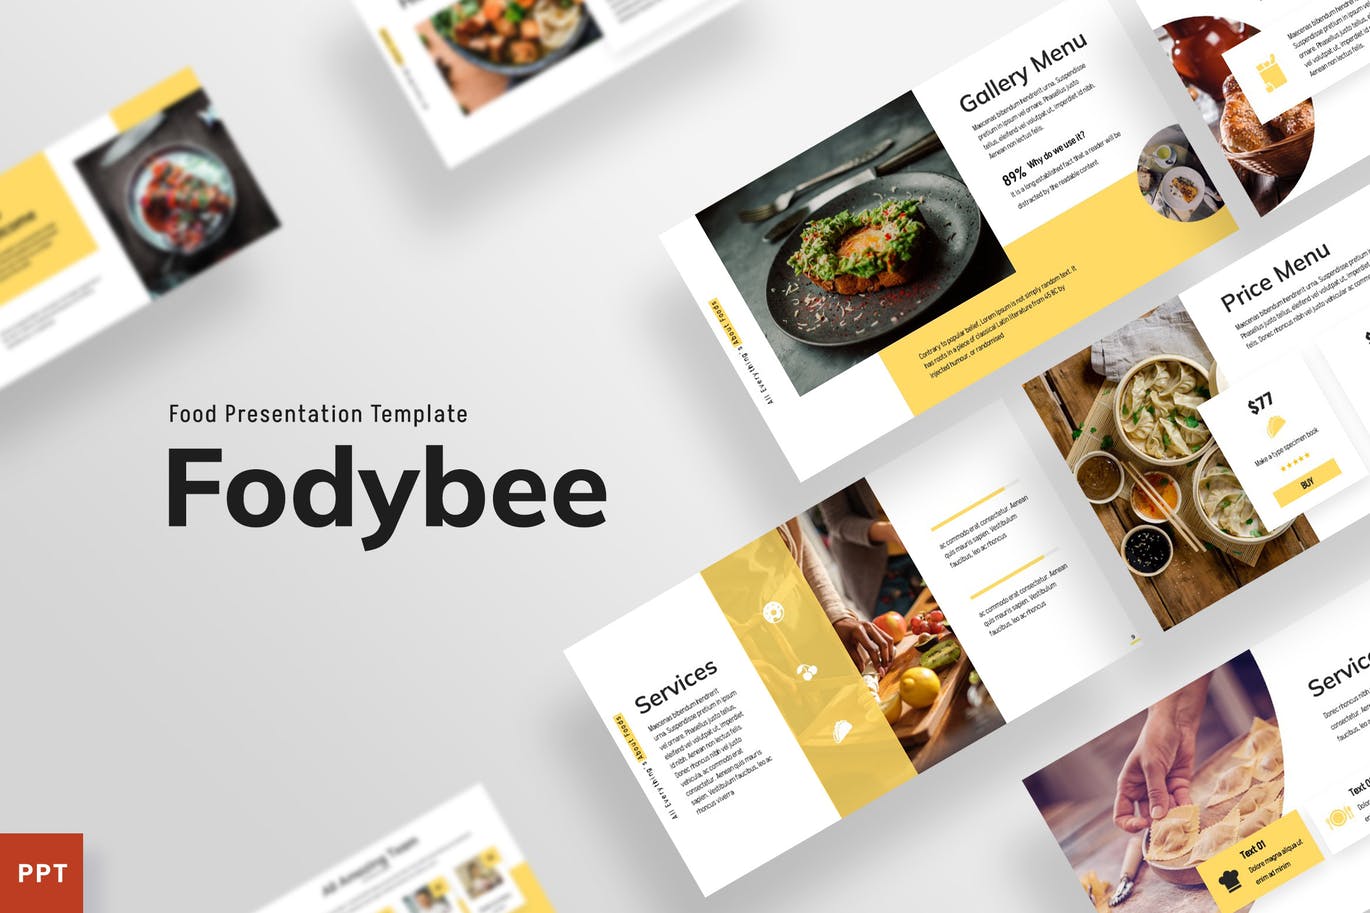 餐厅食品推广PowerPoint演示模板 Foodybee – Powerpoint Template 幻灯图表 第1张